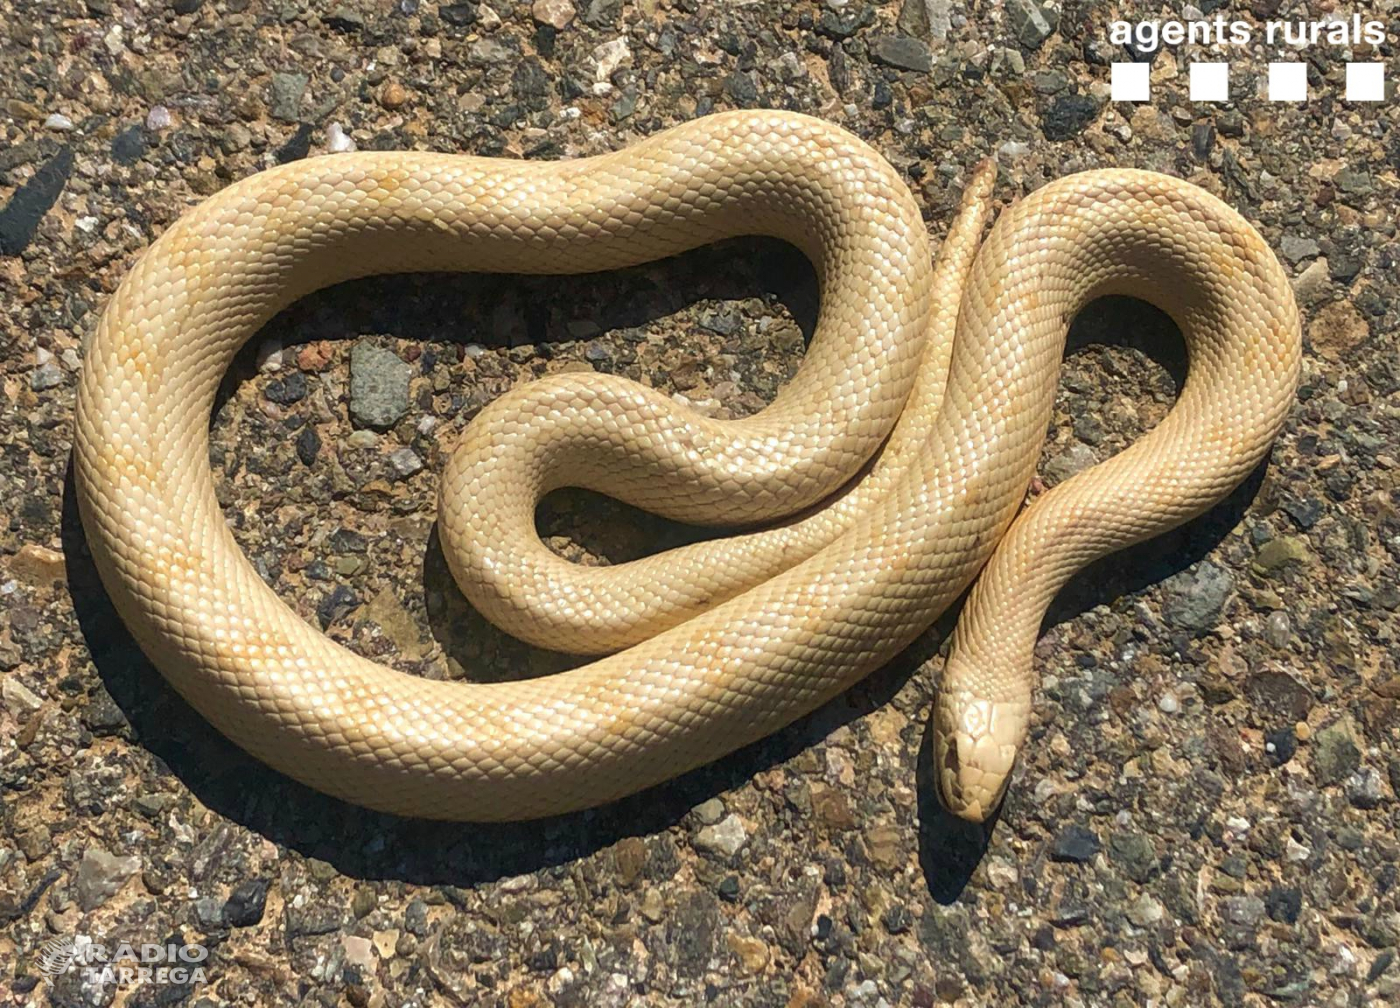 Els Agents Rurals descobreixen un exemplar de serp albina a Vallbona de les Monges